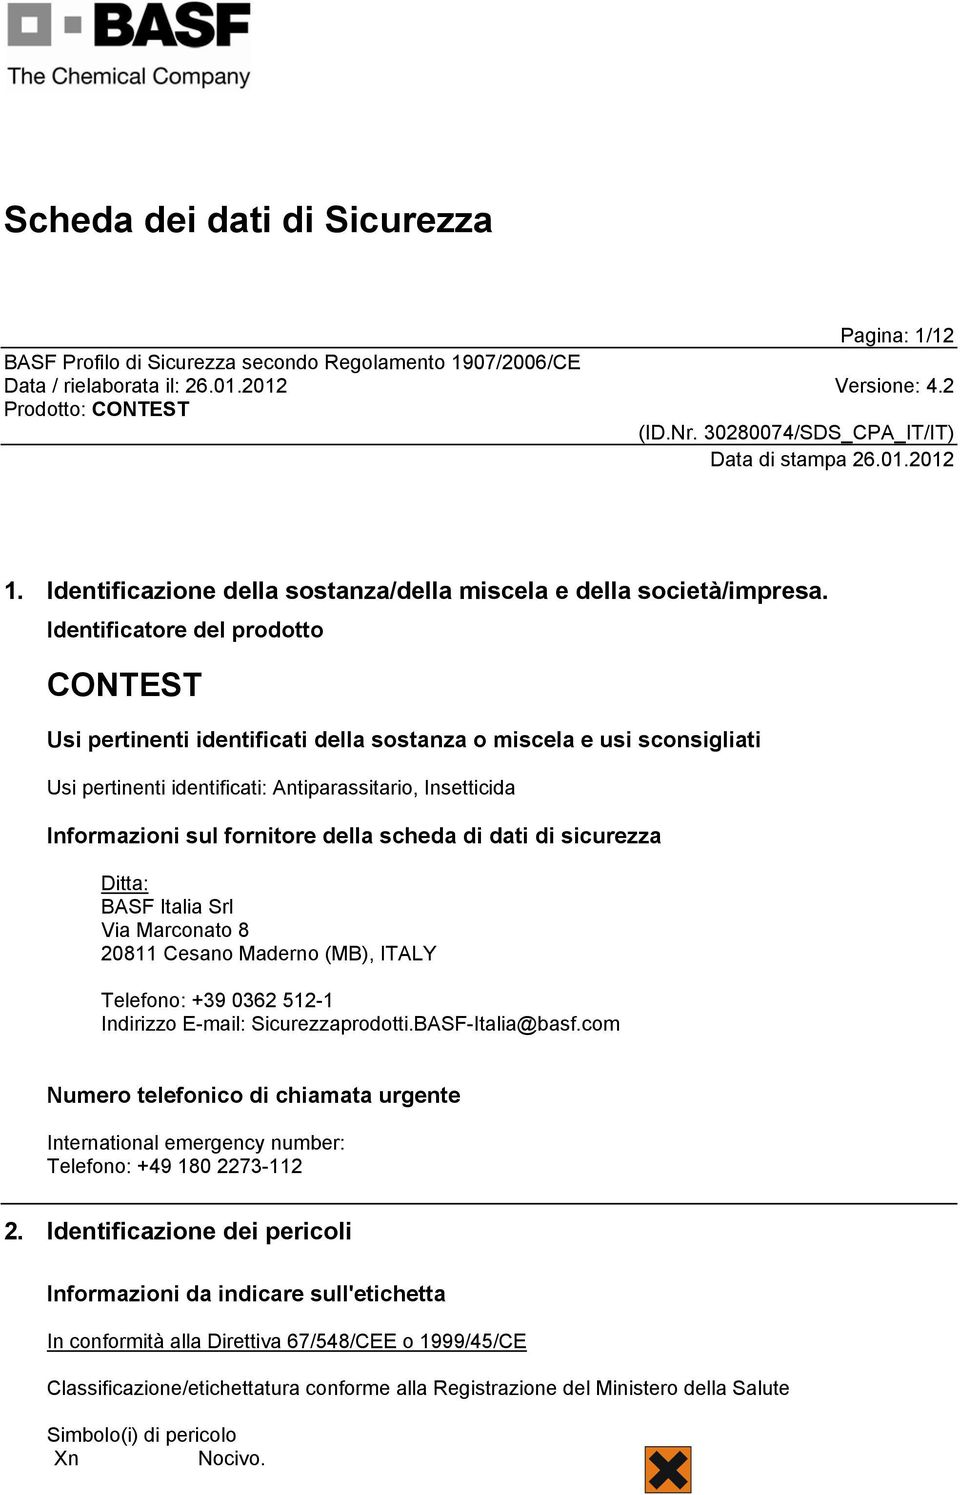 scheda di dati di sicurezza Ditta: BASF Italia Srl Via Marconato 8 20811 Cesano Maderno (MB), ITALY Telefono: +39 0362 512-1 Indirizzo E-mail: Sicurezzaprodotti.BASF-Italia@basf.